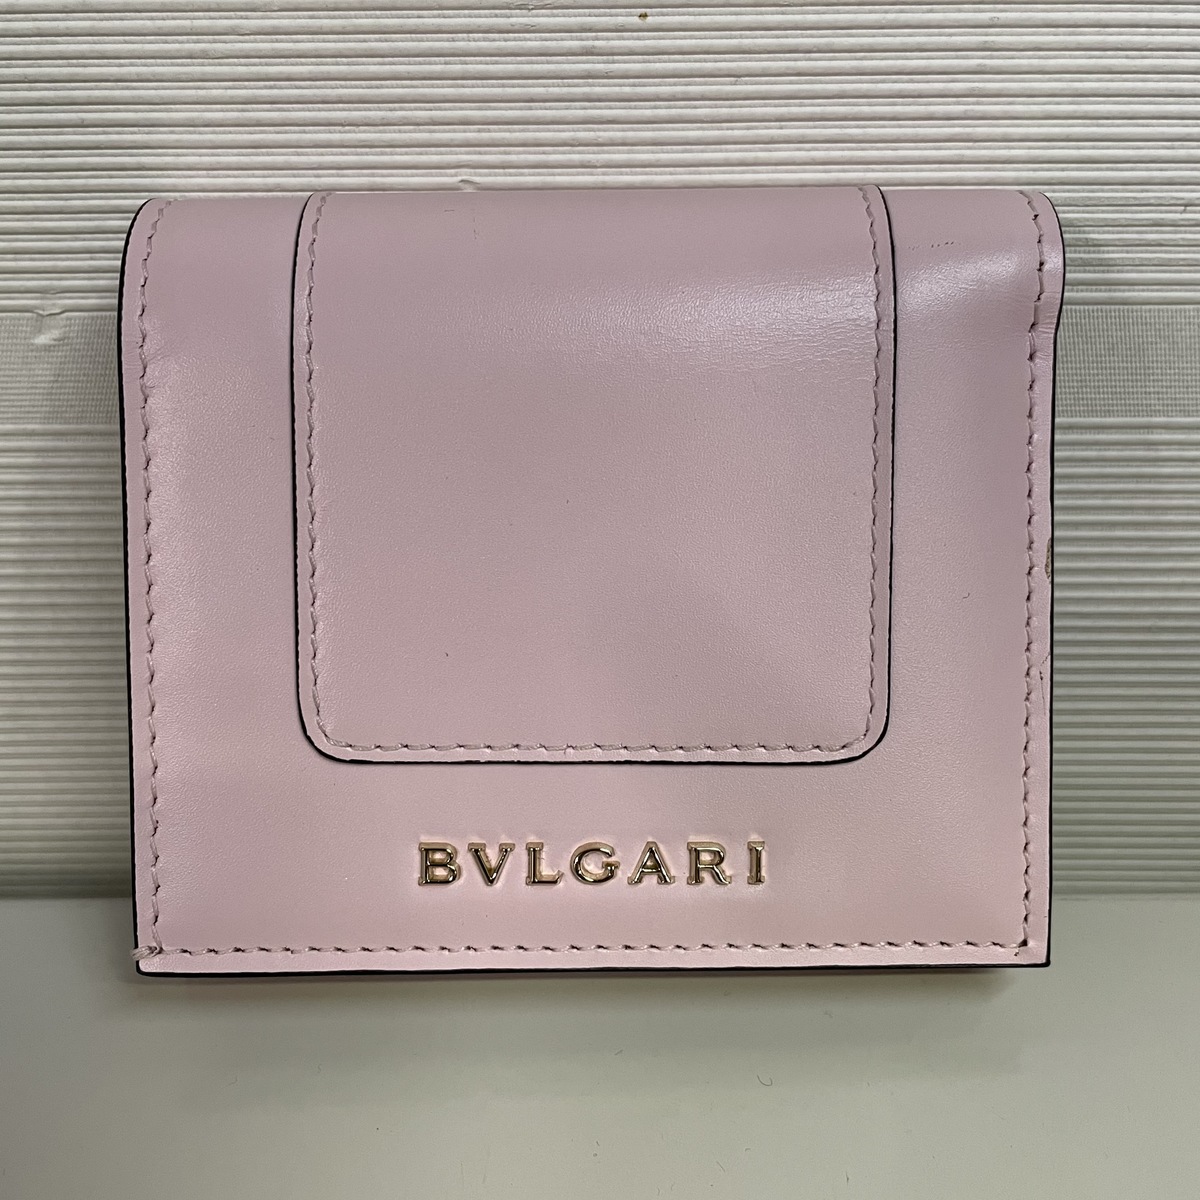 ブルガリのピンク セルペンティ 288035 3つ折り財布の買取実績です。